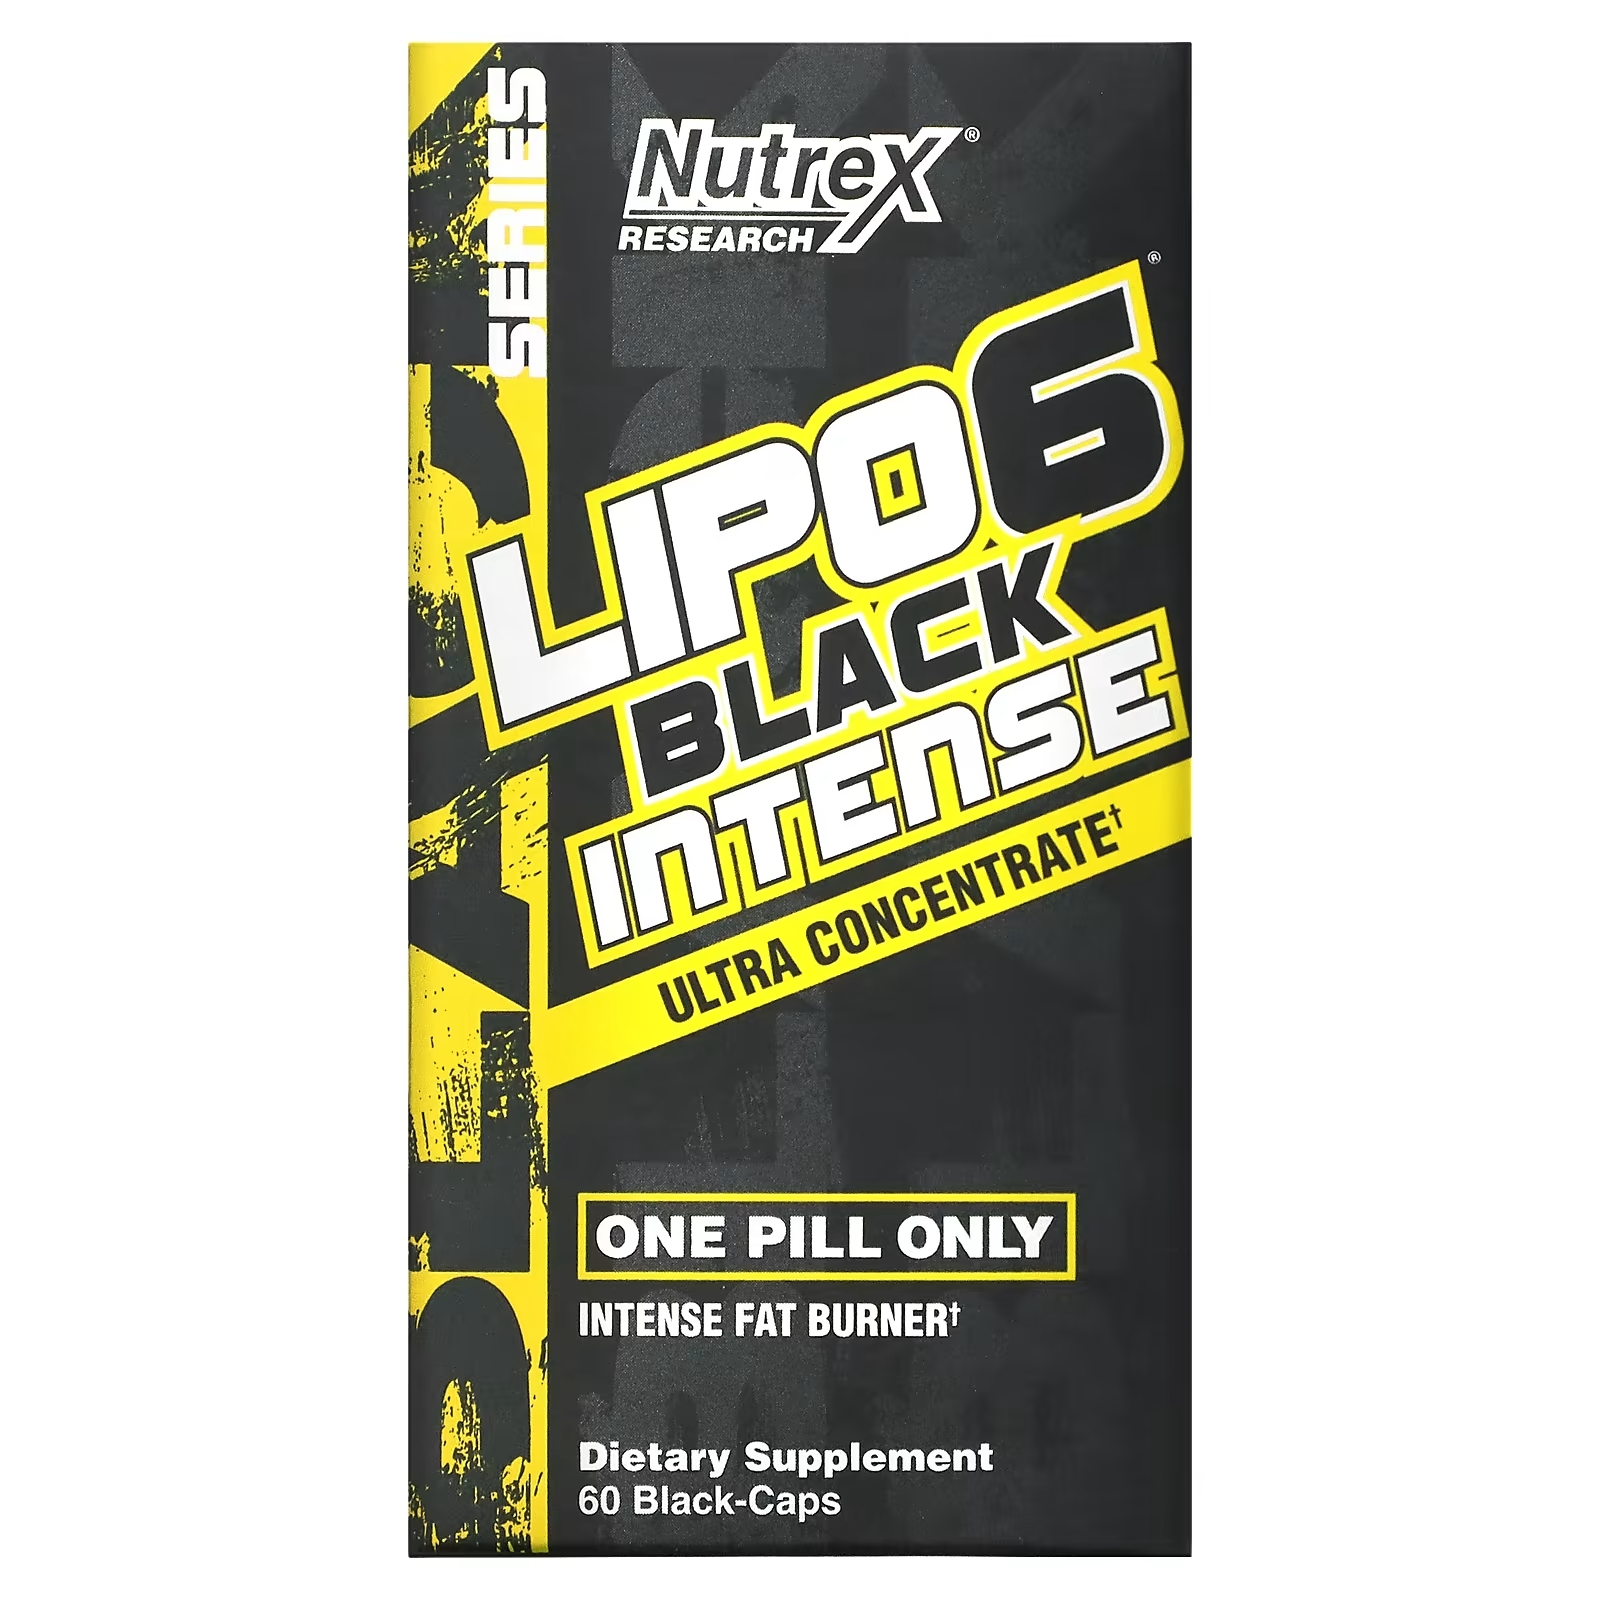 Ультраконцентрат Nutrex Research LIPO-6 Black Intense, 60 капсул nutrex research lipo 6 black ультраконцентрат 60 черных капсул